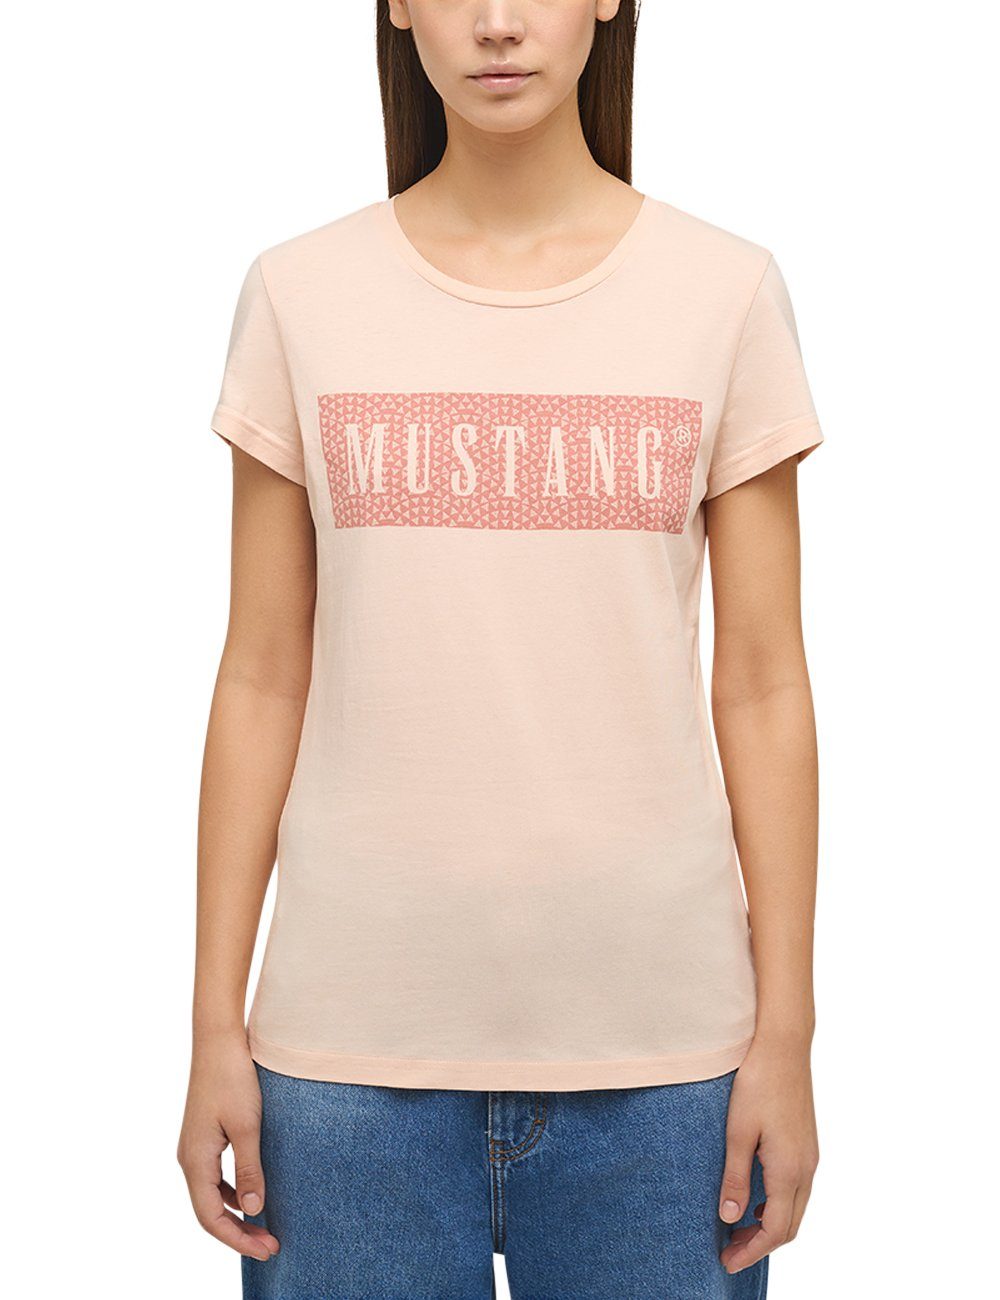 T-Shirt Mustang Kurzarmshirt MUSTANG hellrosa Print-Shirt